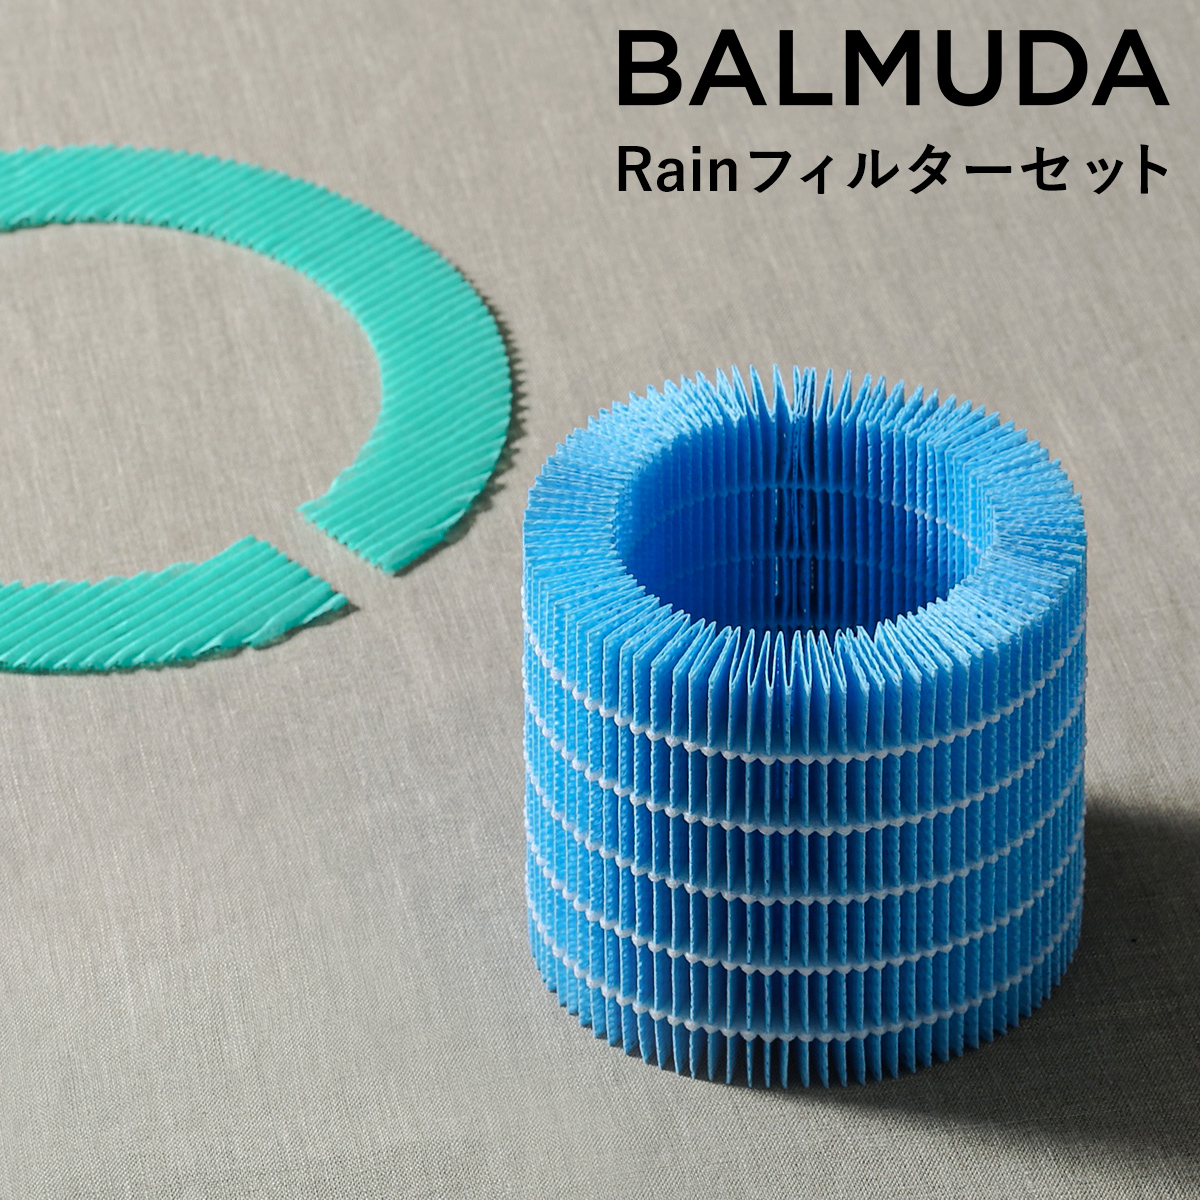 おしゃれな気化式加湿器「BALMUDA rain（バルミューダ レイン）」のフィルターセット。水洗い可能♪1年に1回の交換を推奨しています。 バルミューダ BALMUDA 気化式加湿器 Rain レイン フィルター リフィル フィルターセット 交換用 加湿器 気化式 酵素フィルター 給水フィルター ERN-S100【送料無料】［ BALMUDA rain/レイン フィルターセット ］